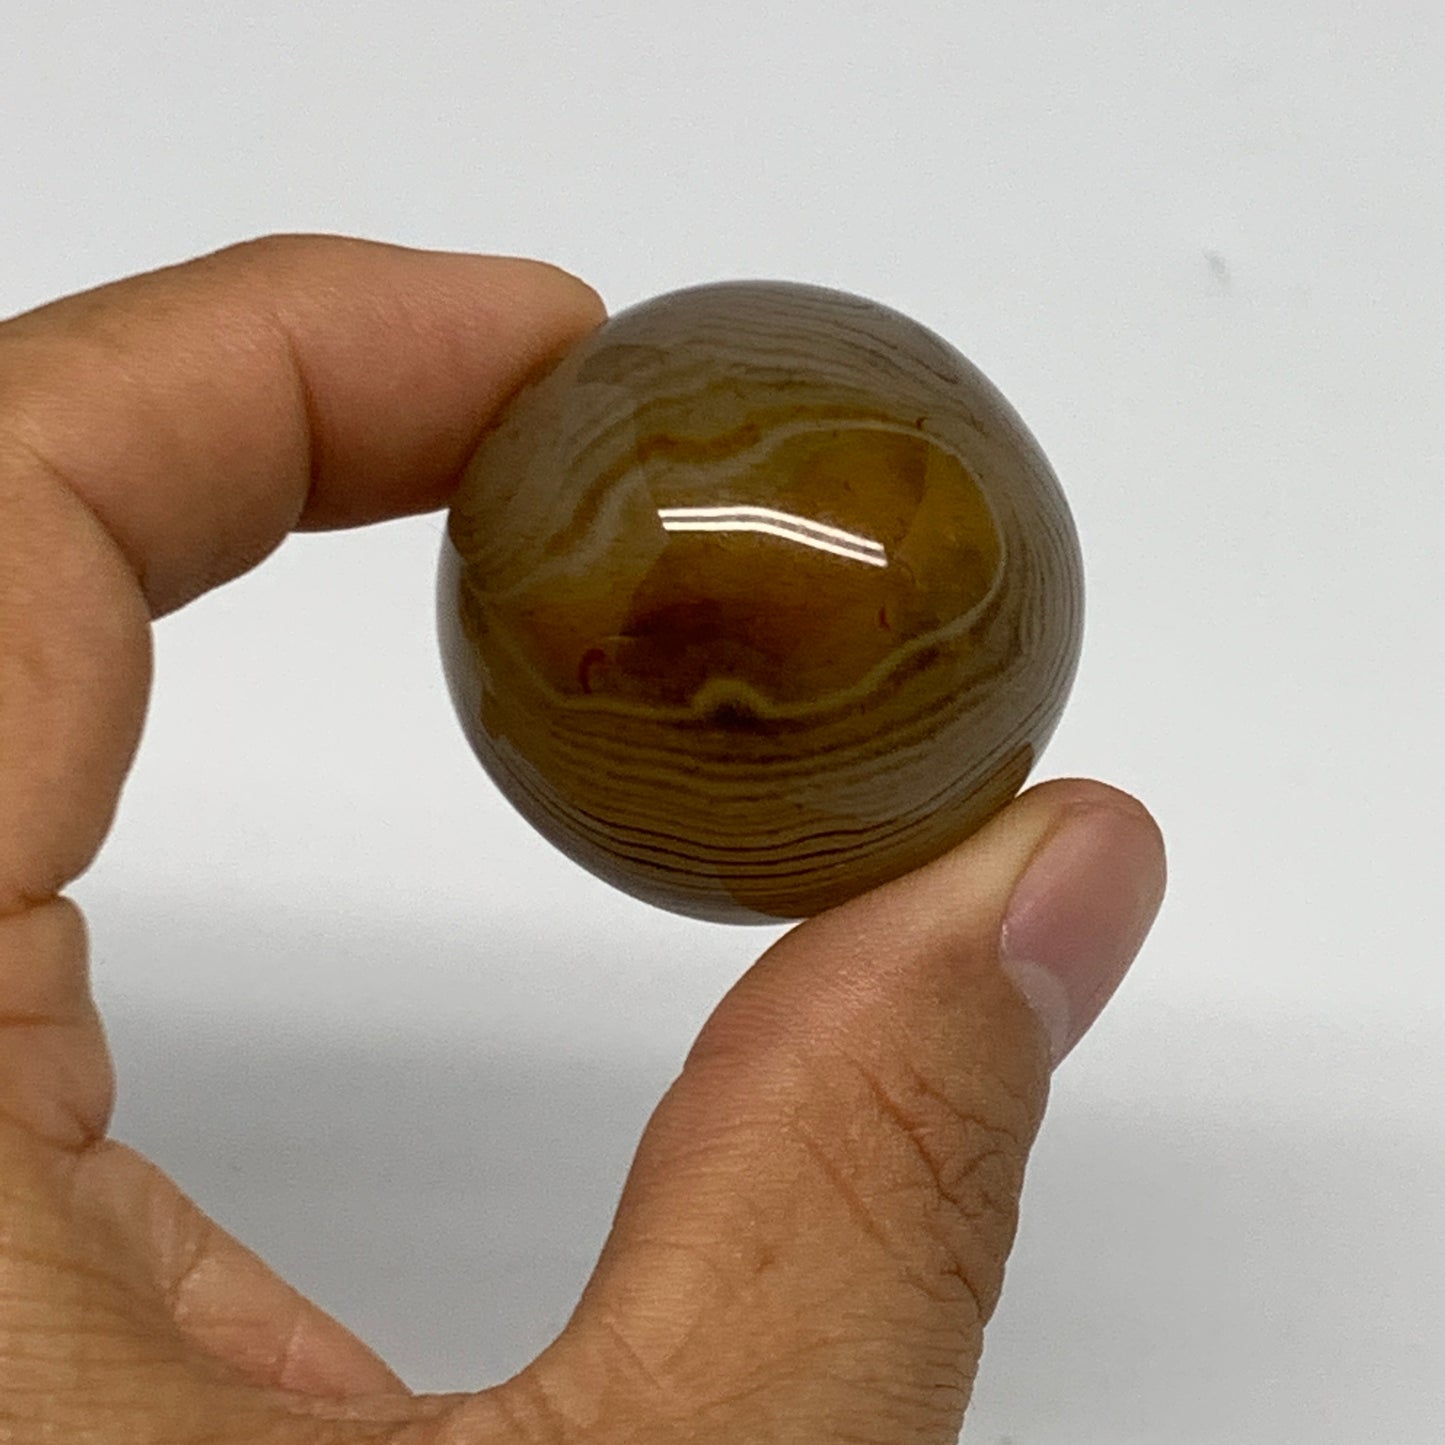 123g, 1.4"(35mm)-1.4"(36mm), 2pcs, Sardonyx Sphere Ball Crystal @Brazil, B23042